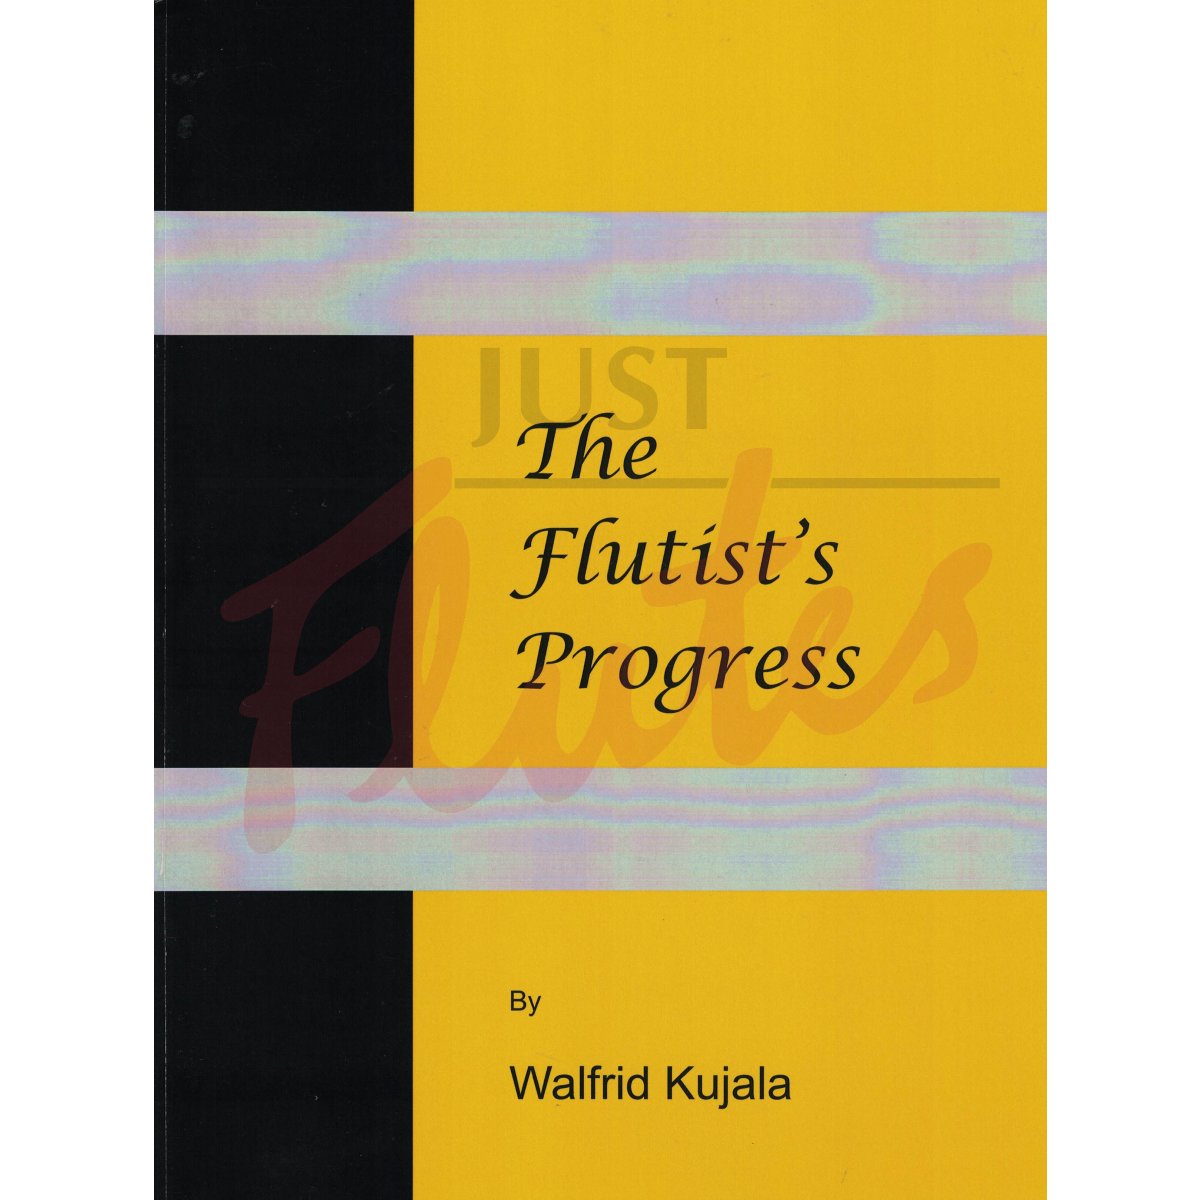 The Flutist's Progress